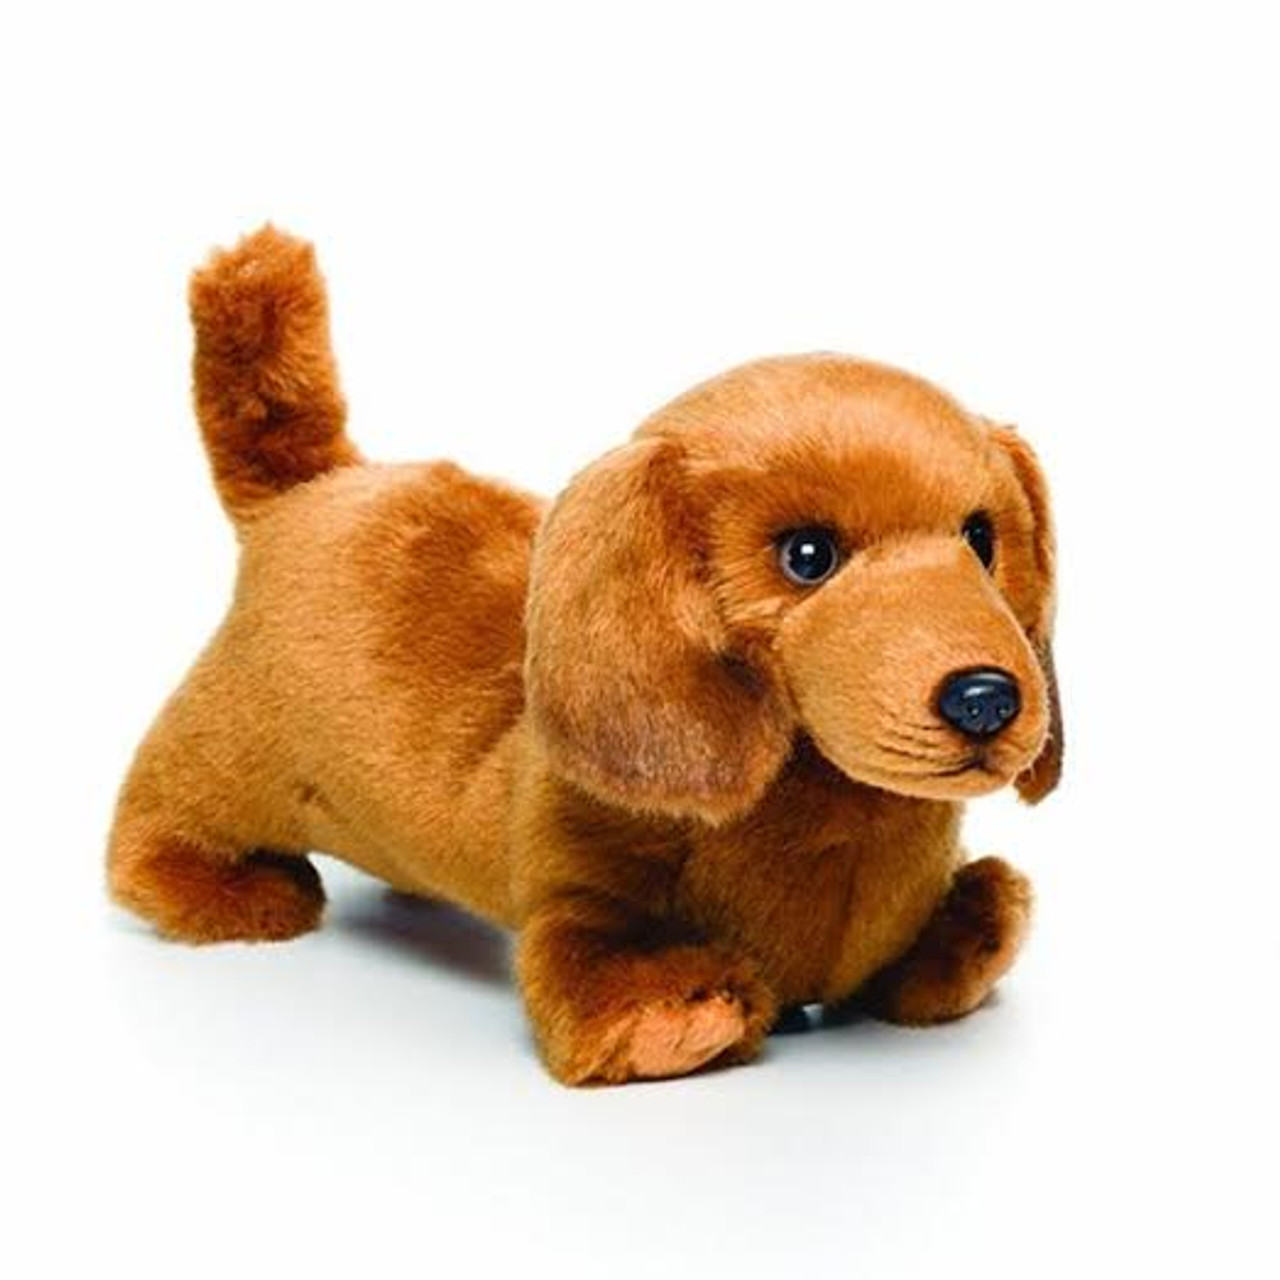 Dachshund Dog Plush Toy